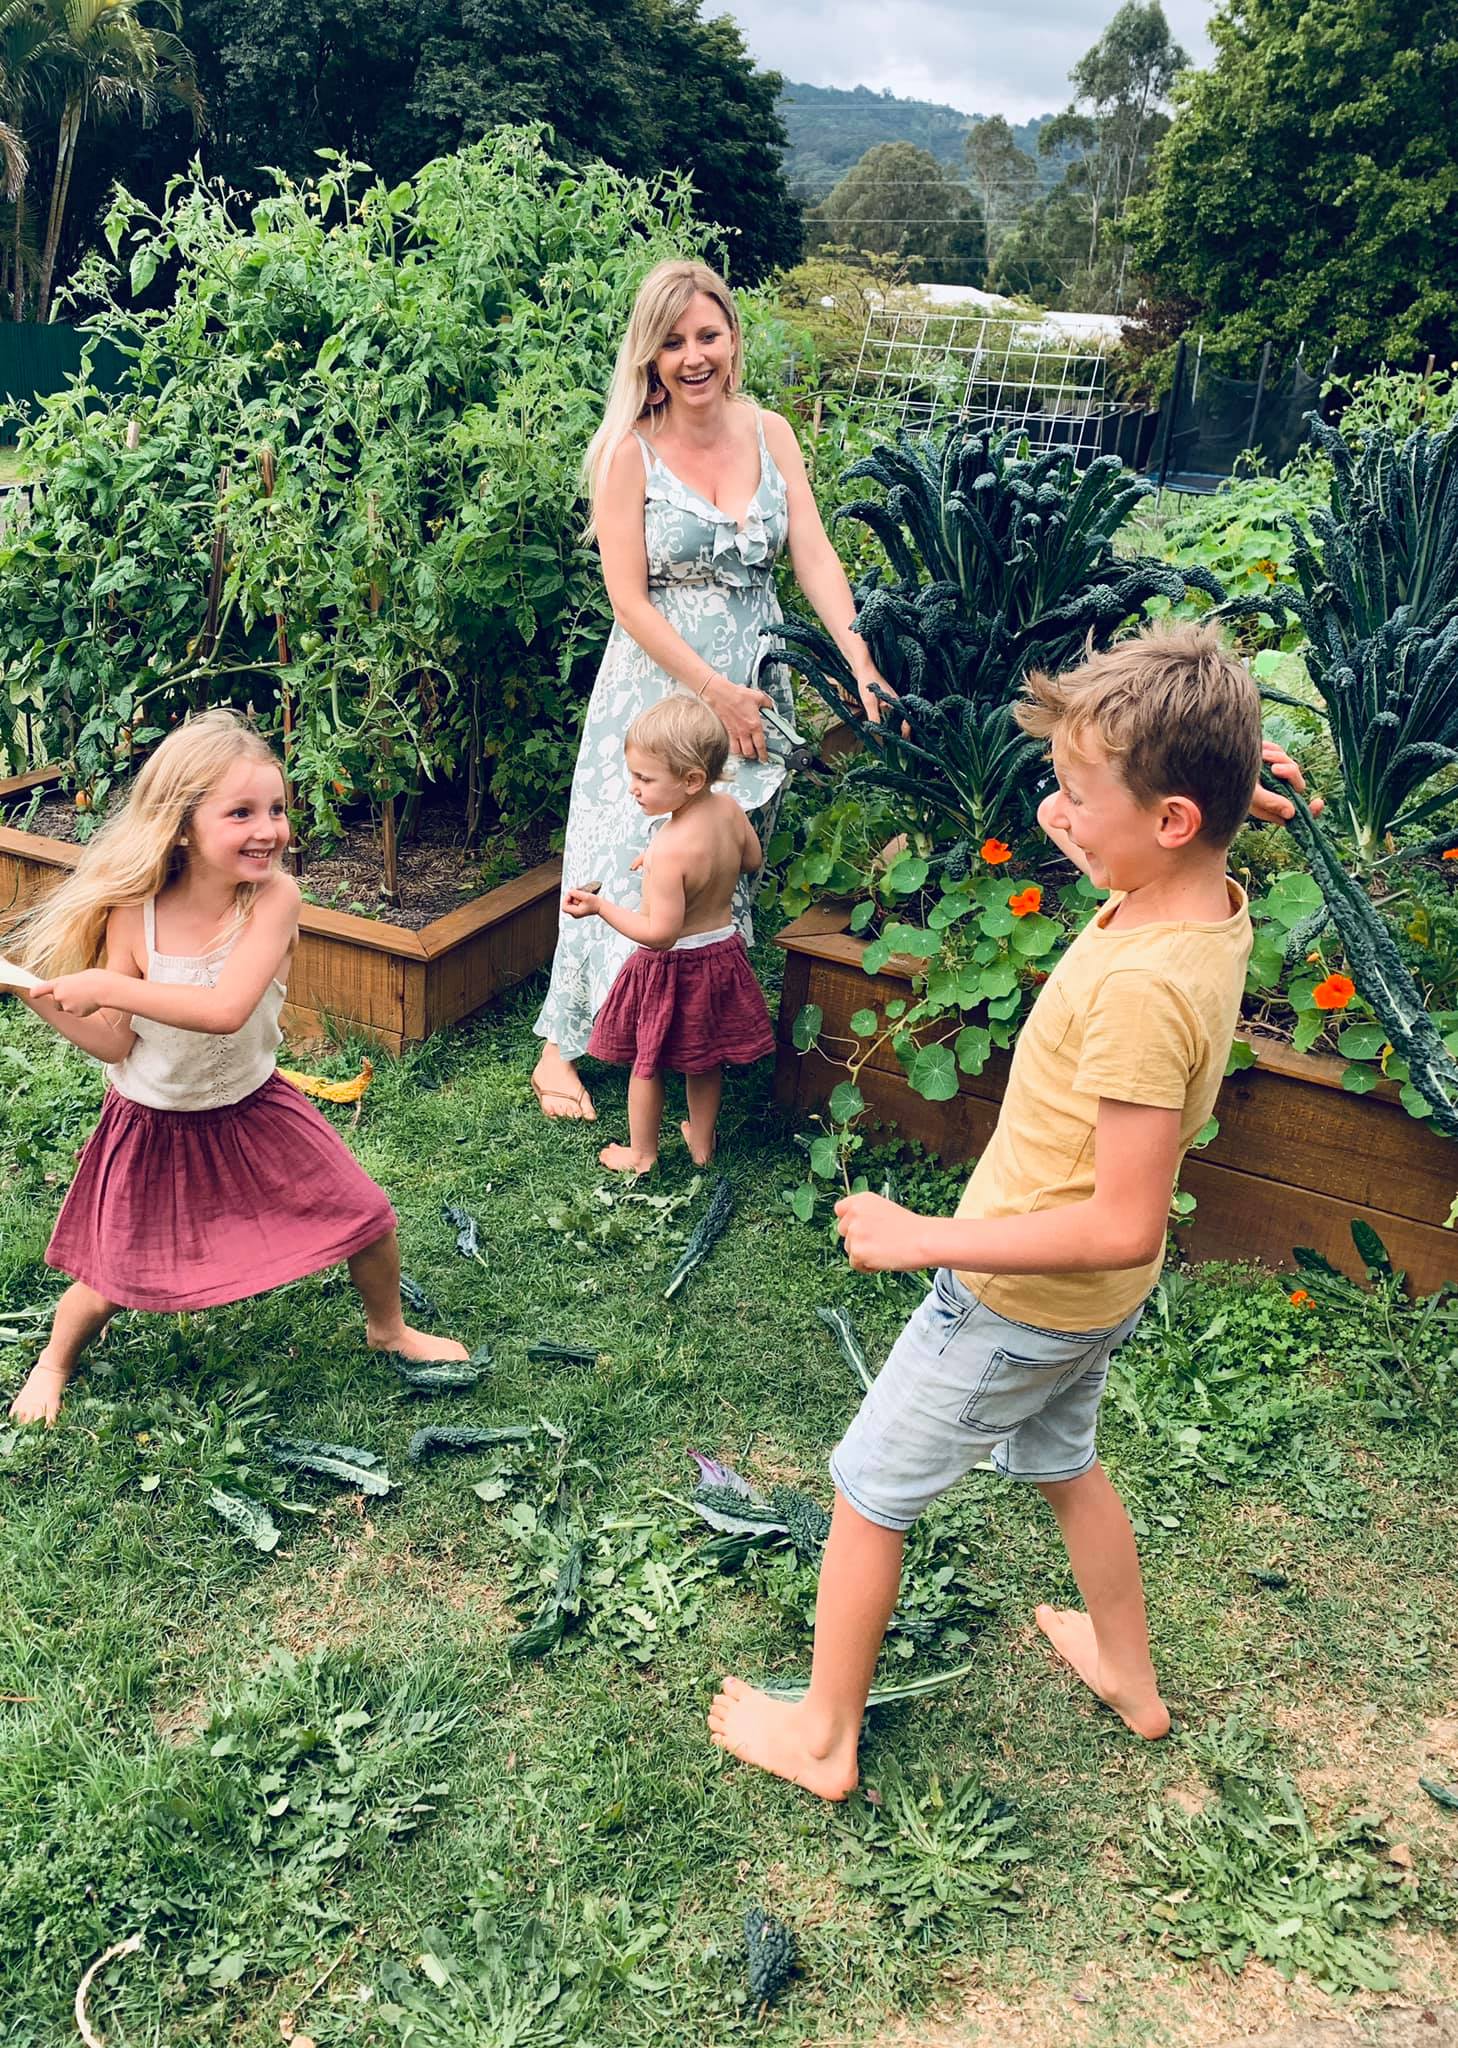 Cuộc sống chỉ có tiếng cười và sự an yên của người mẹ cùng 4 đứa trẻ bên khu vườn ở quê xanh mát quanh năm - Ảnh 5.